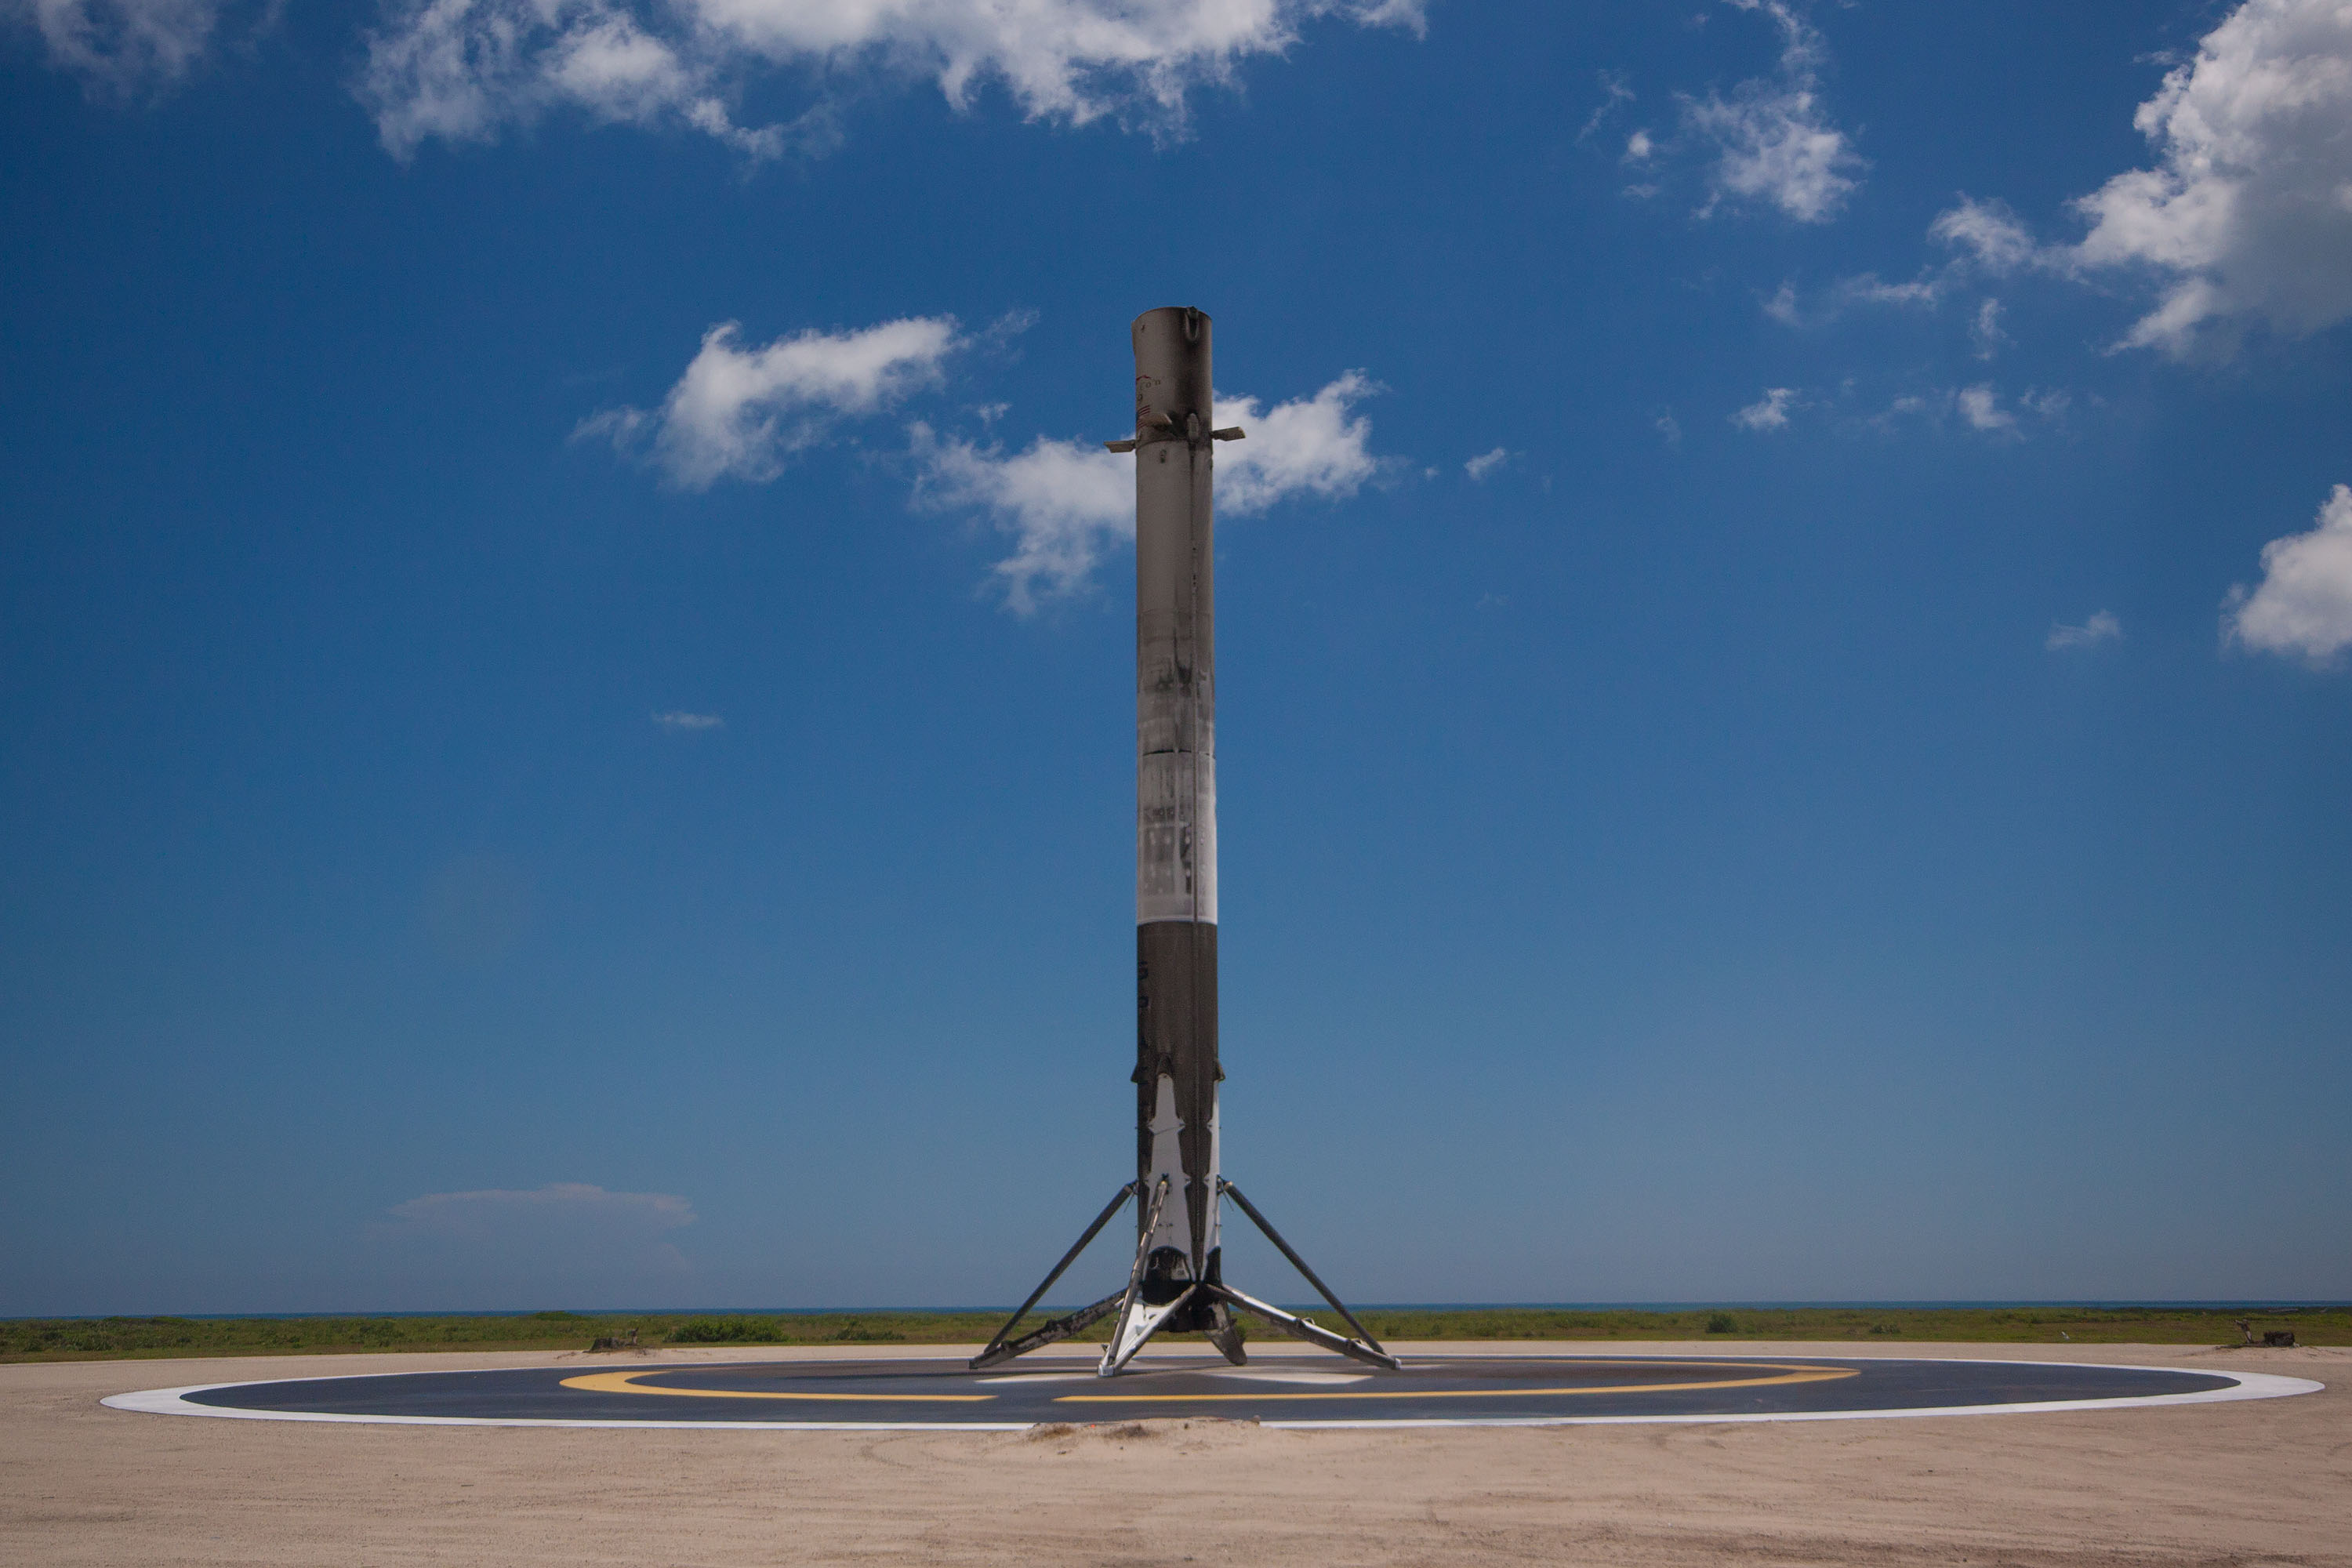 Pierwszy stopień Falcona 9 na Landing Zone 1 po lądowaniu w trakcie misji CRS-12, 14 sierpnia 2017 roku (Źródło: SpaceX)